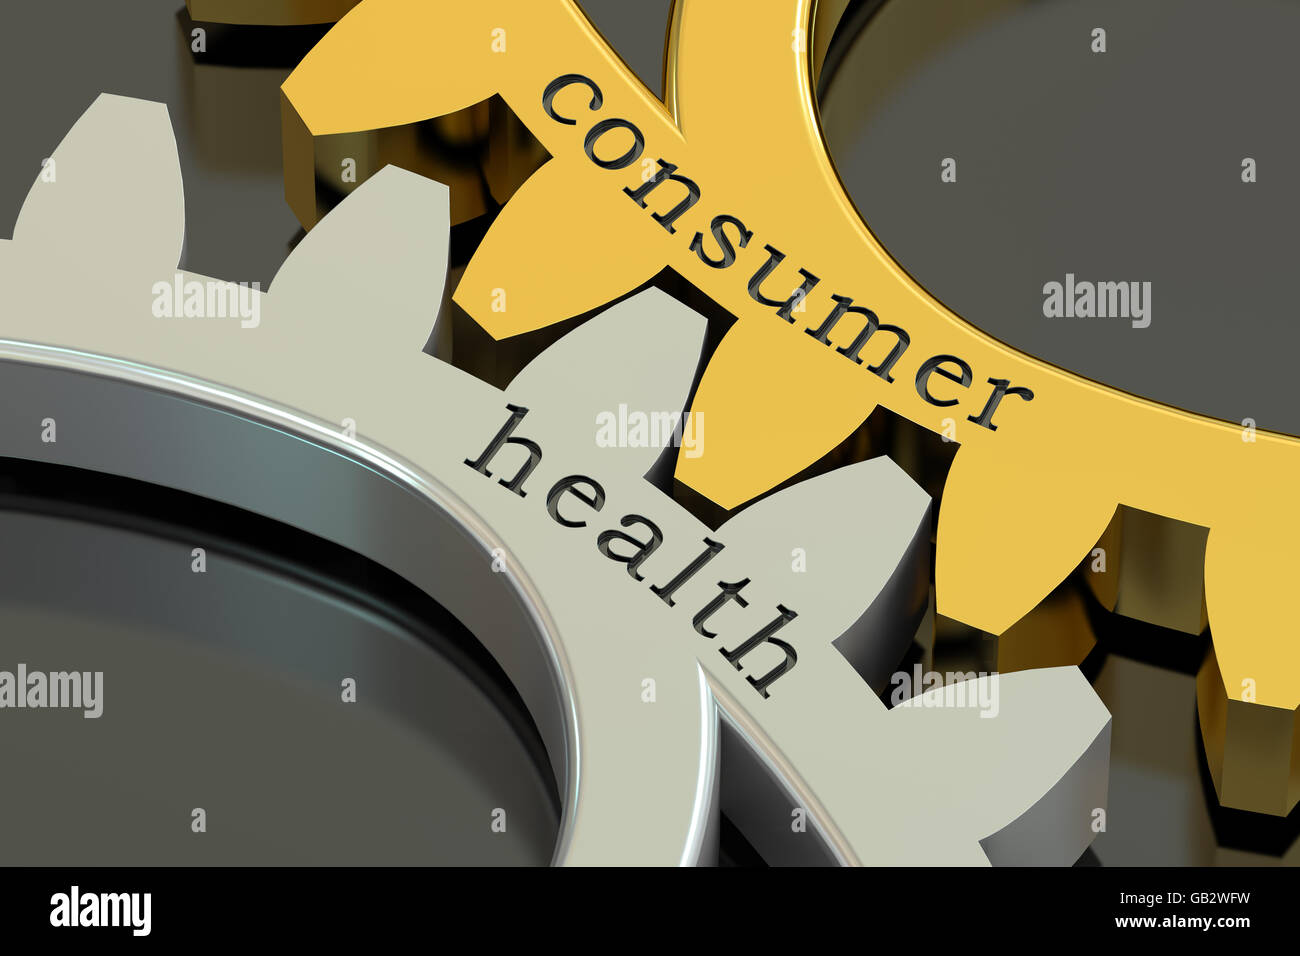 Le concept de la santé des consommateurs, sur les roues dentées, 3D Rendering Banque D'Images